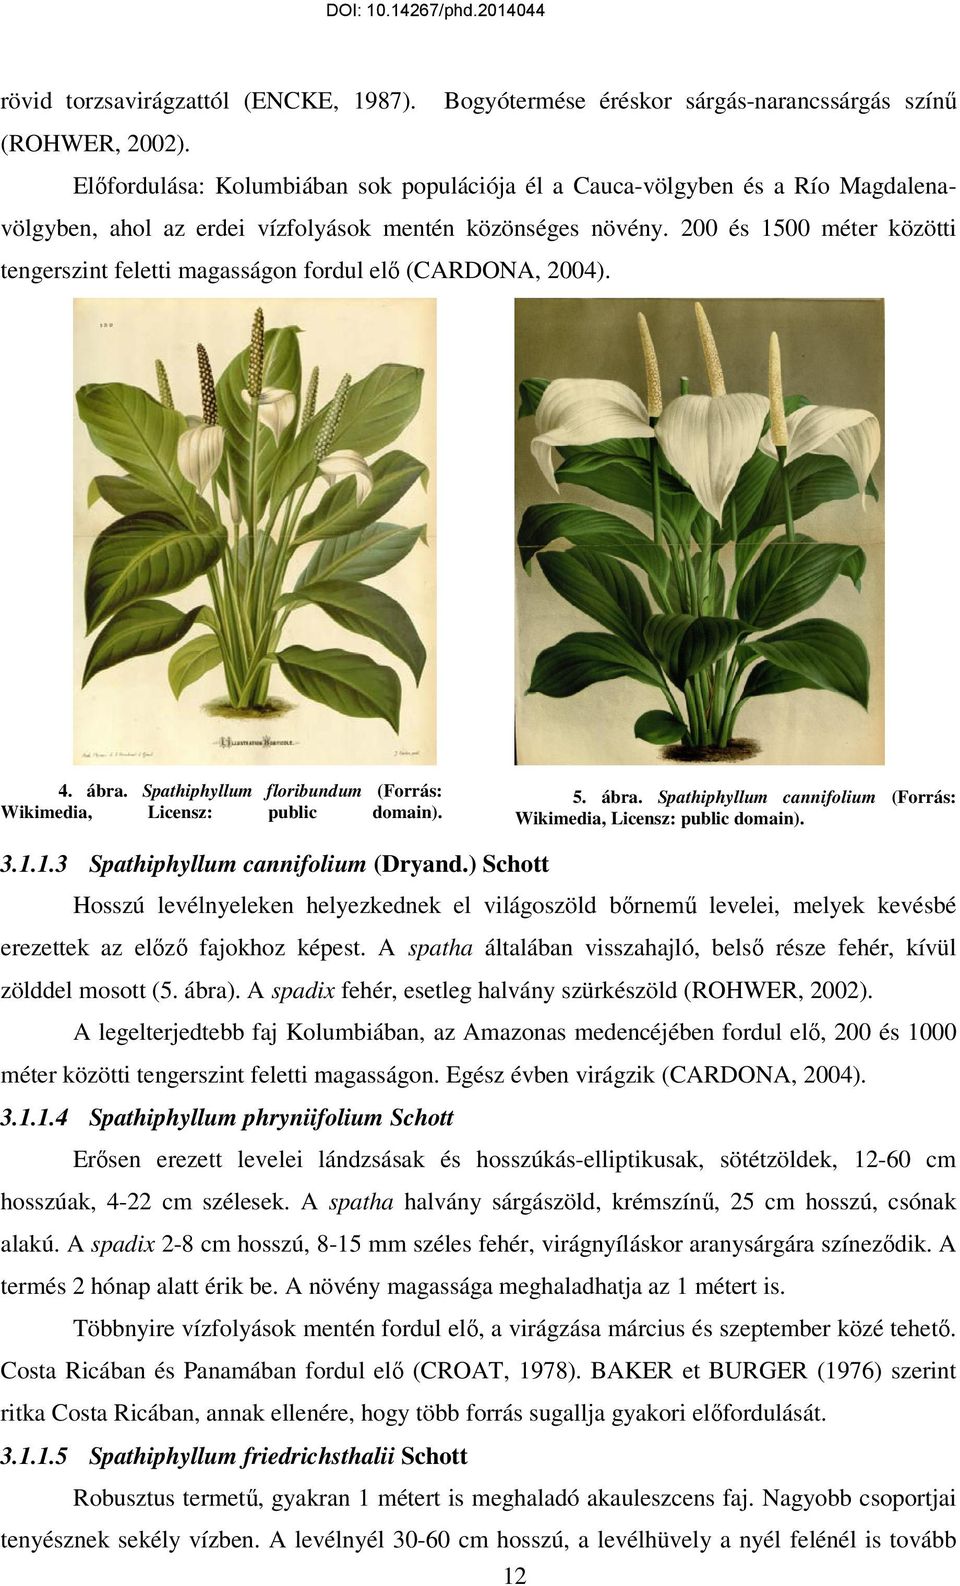 200 és 1500 méter közötti tengerszint feletti magasságon fordul elı (CARDONA, 2004). 4. ábra. Spathiphyllum floribundum (Forrás: Wikimedia, Licensz: public domain). 5. ábra. Spathiphyllum cannifolium (Forrás: Wikimedia, Licensz: public domain).